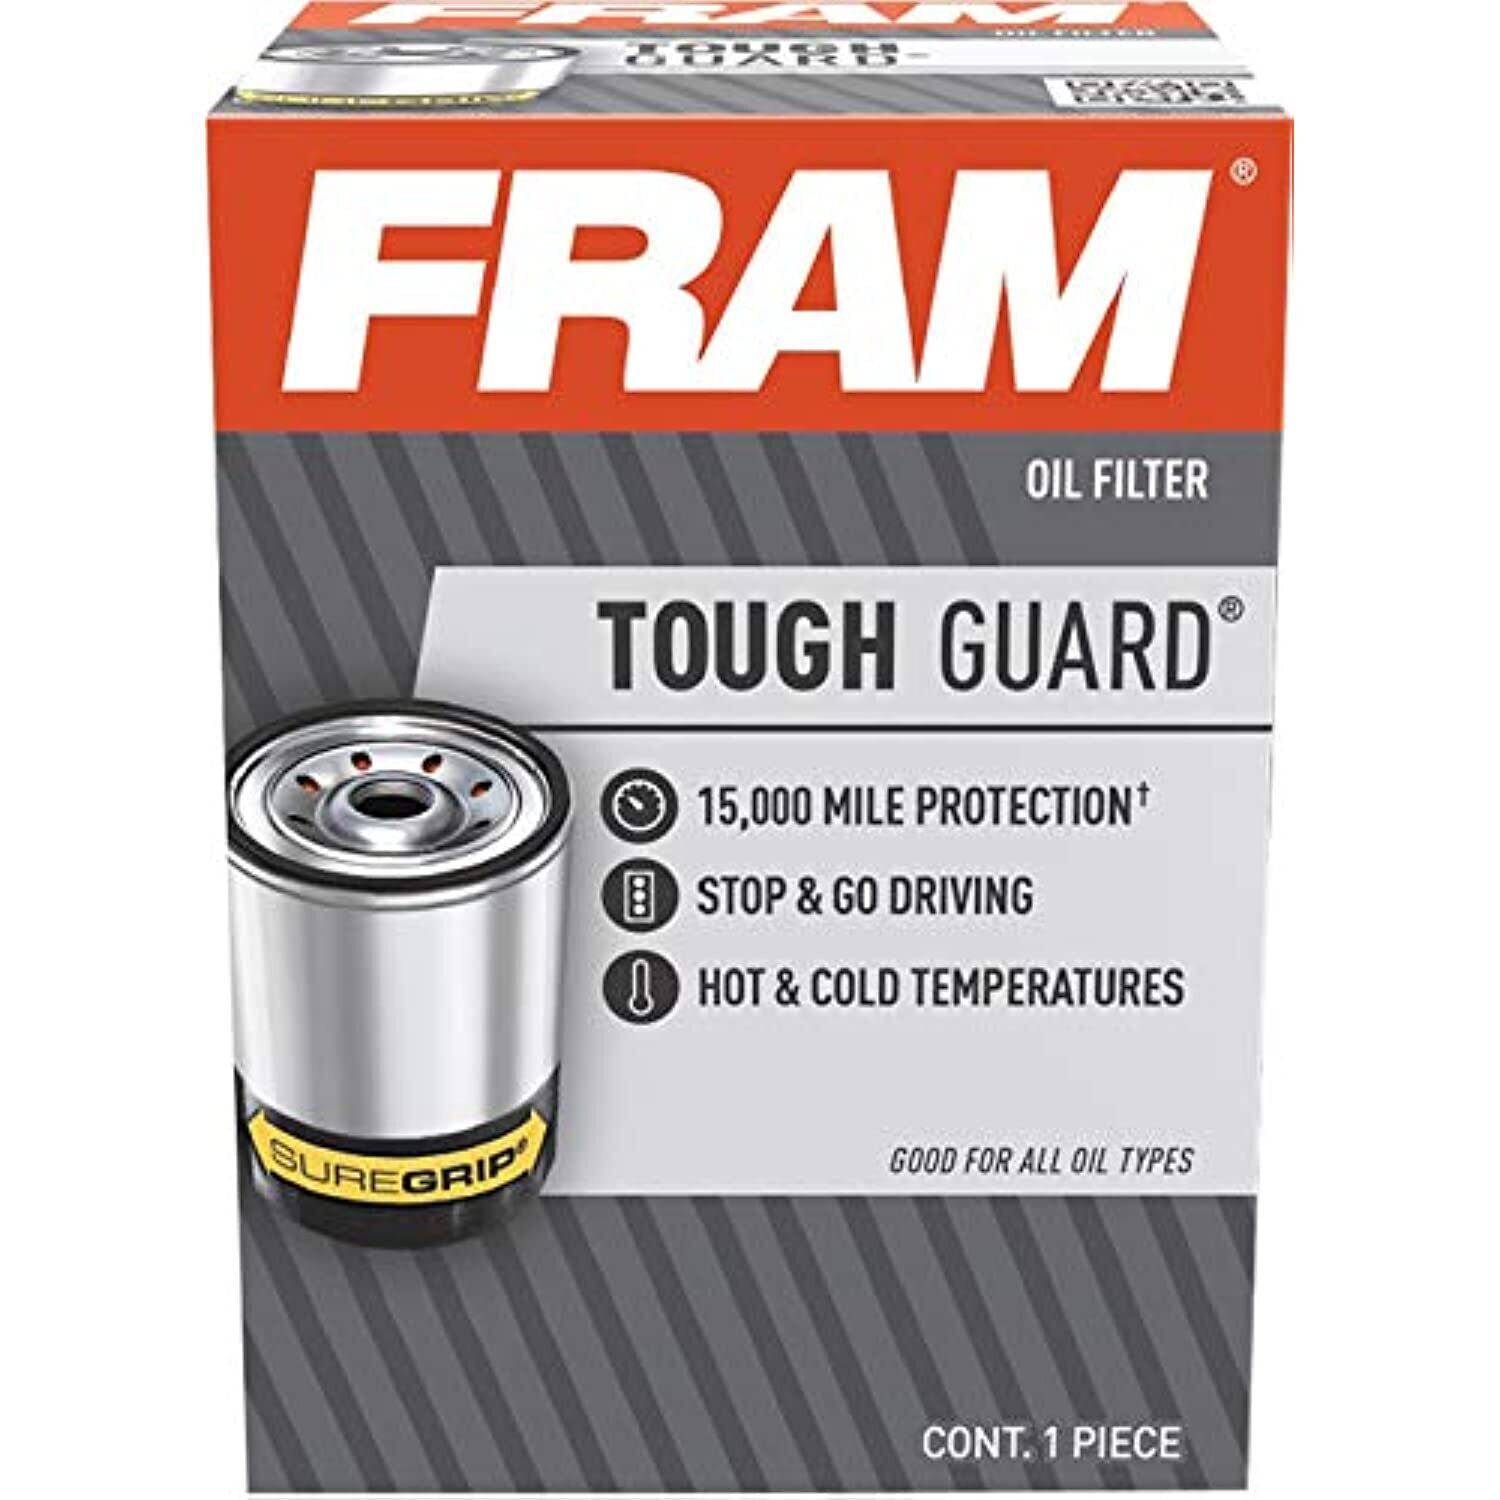 FRAM Tough Guard TG3786-1, 15K Mile Change Interval Oil Filter